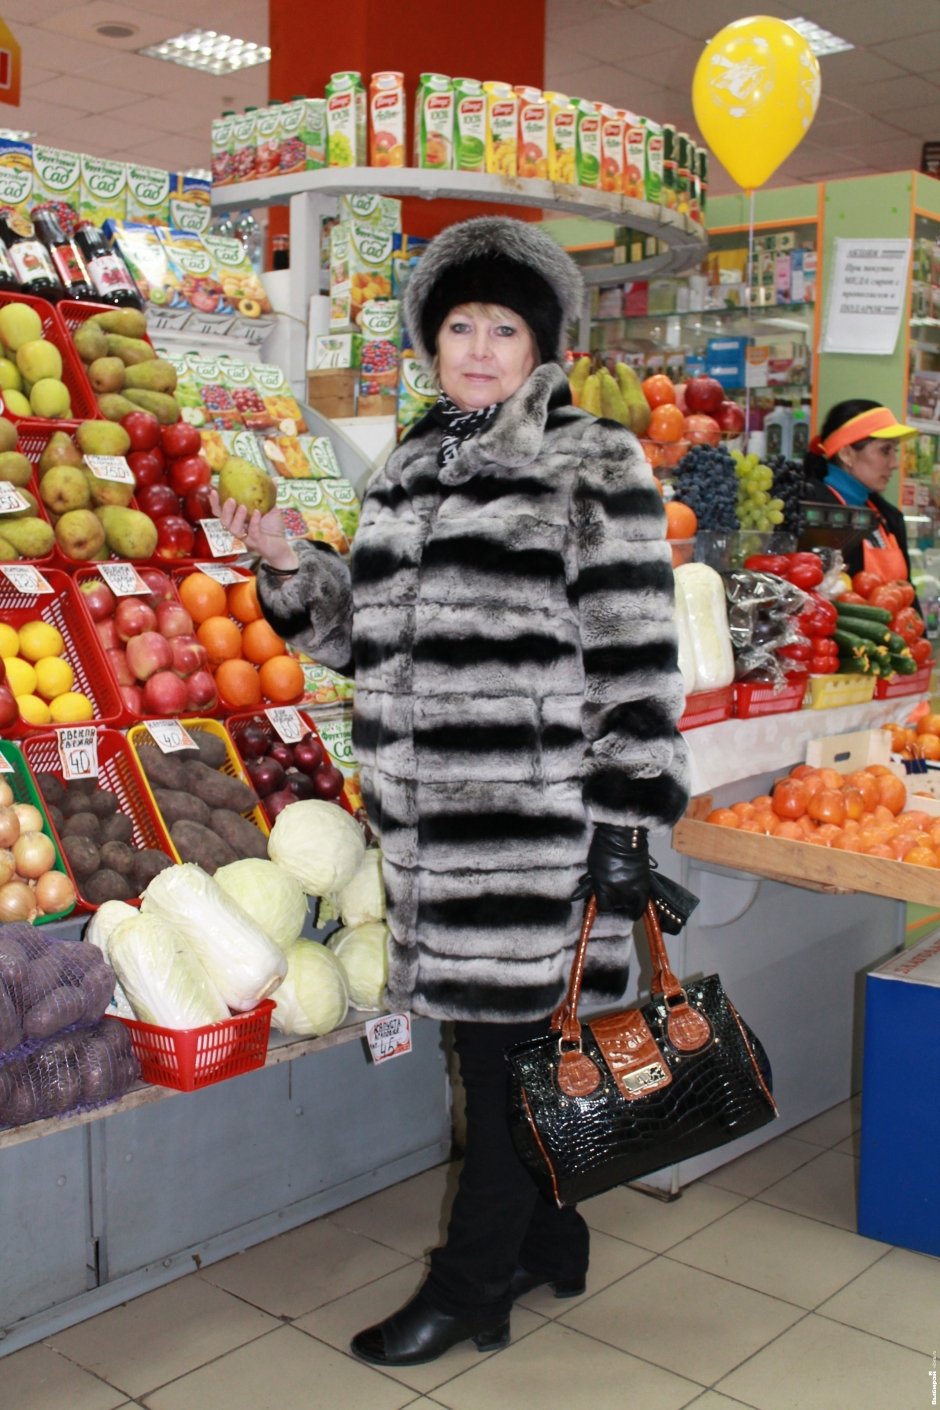 Елена, 50 лет, заведующая гипермаркетом Покупаю мясо, поэтому я хищница. Если бы выбор ограничивался несколькими продуктами, то взяла бы только мясо и фрукты.